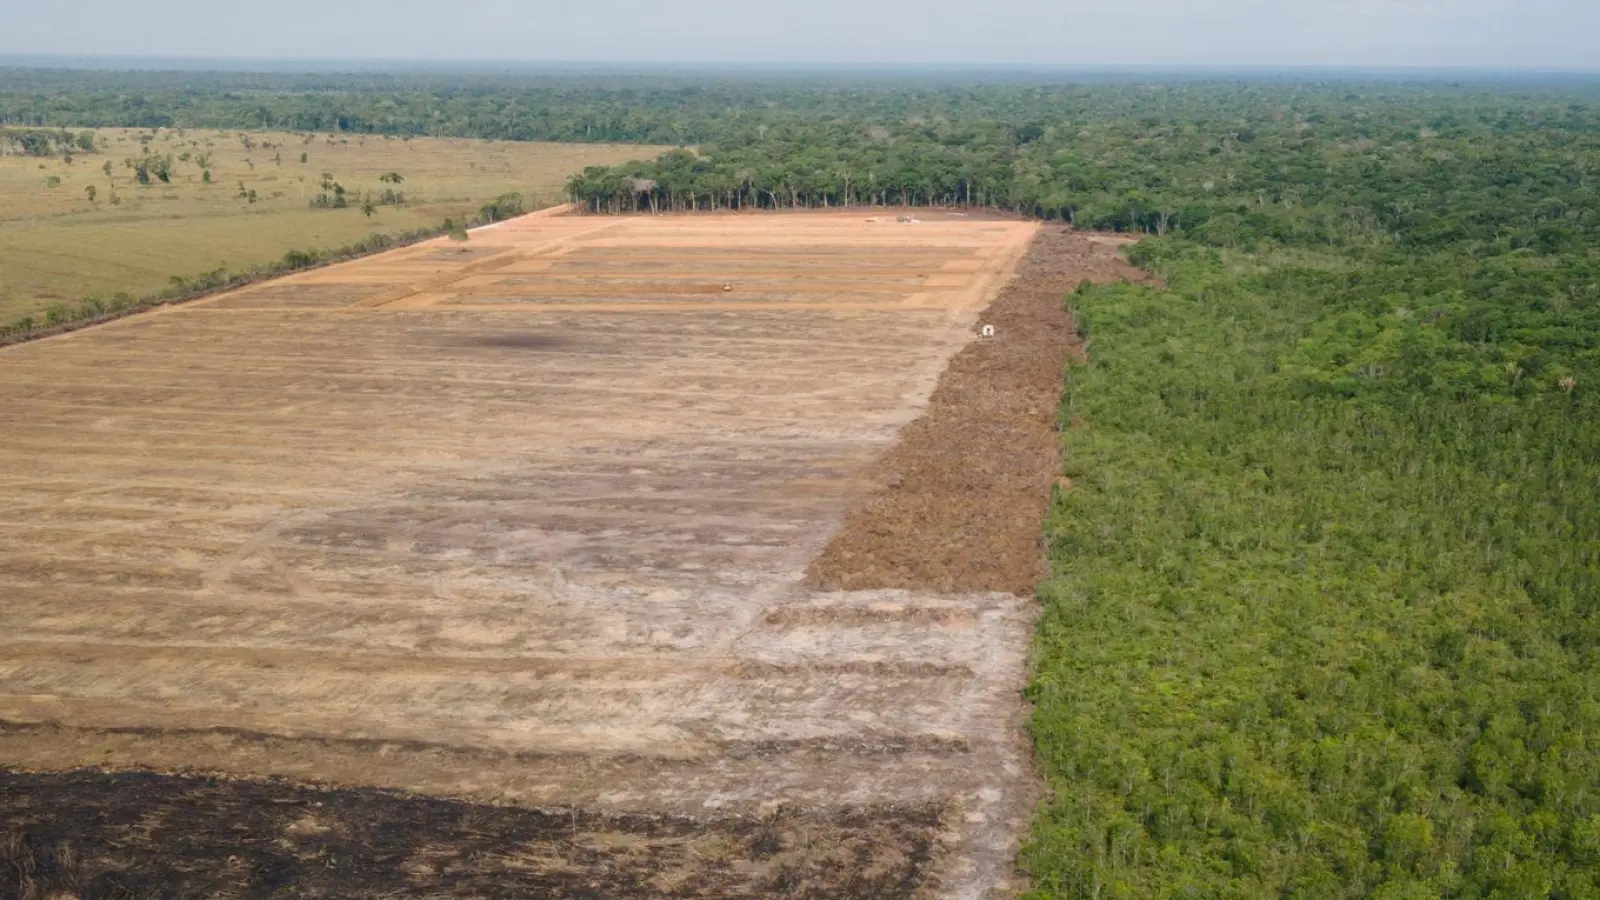 Das Luftbild zeigt eine verbrannte und abgeholzte Fläche im brasilianischen Amazonas-Gebiet. (Foto: Fernando Souza/Zuma Press/dpa)